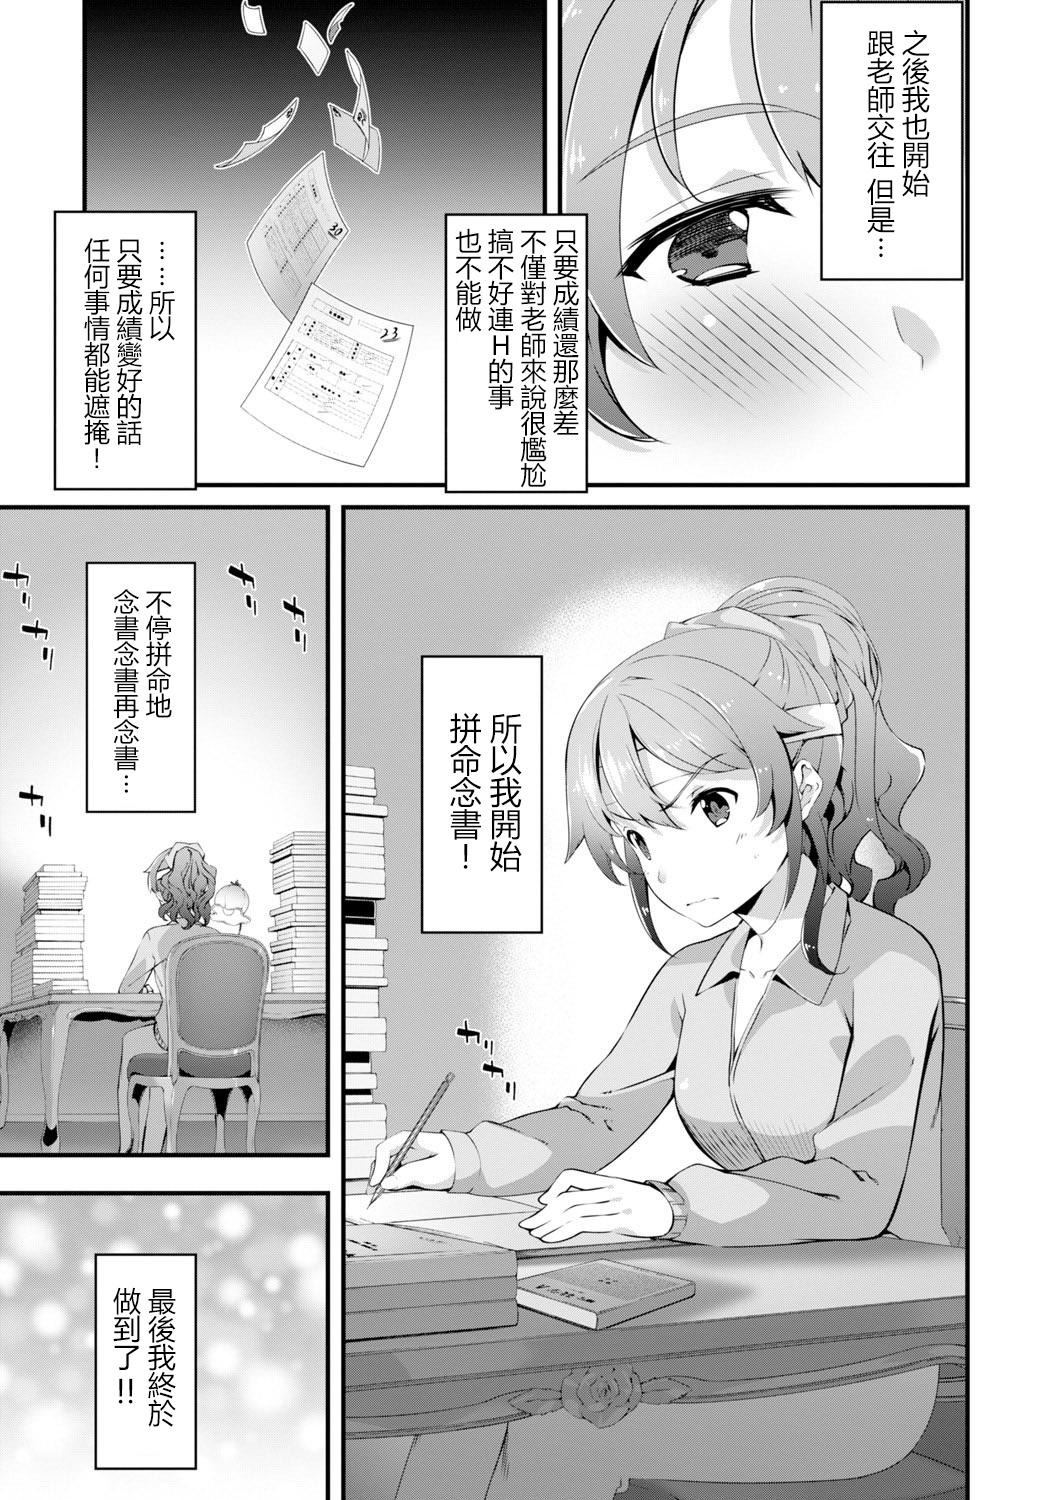 橘由宇 (COMICBAVEL 2016 tháng 4 năm) Phiên bản DL phiên bản Trung Quốc (31 trang)-第1章-图片560